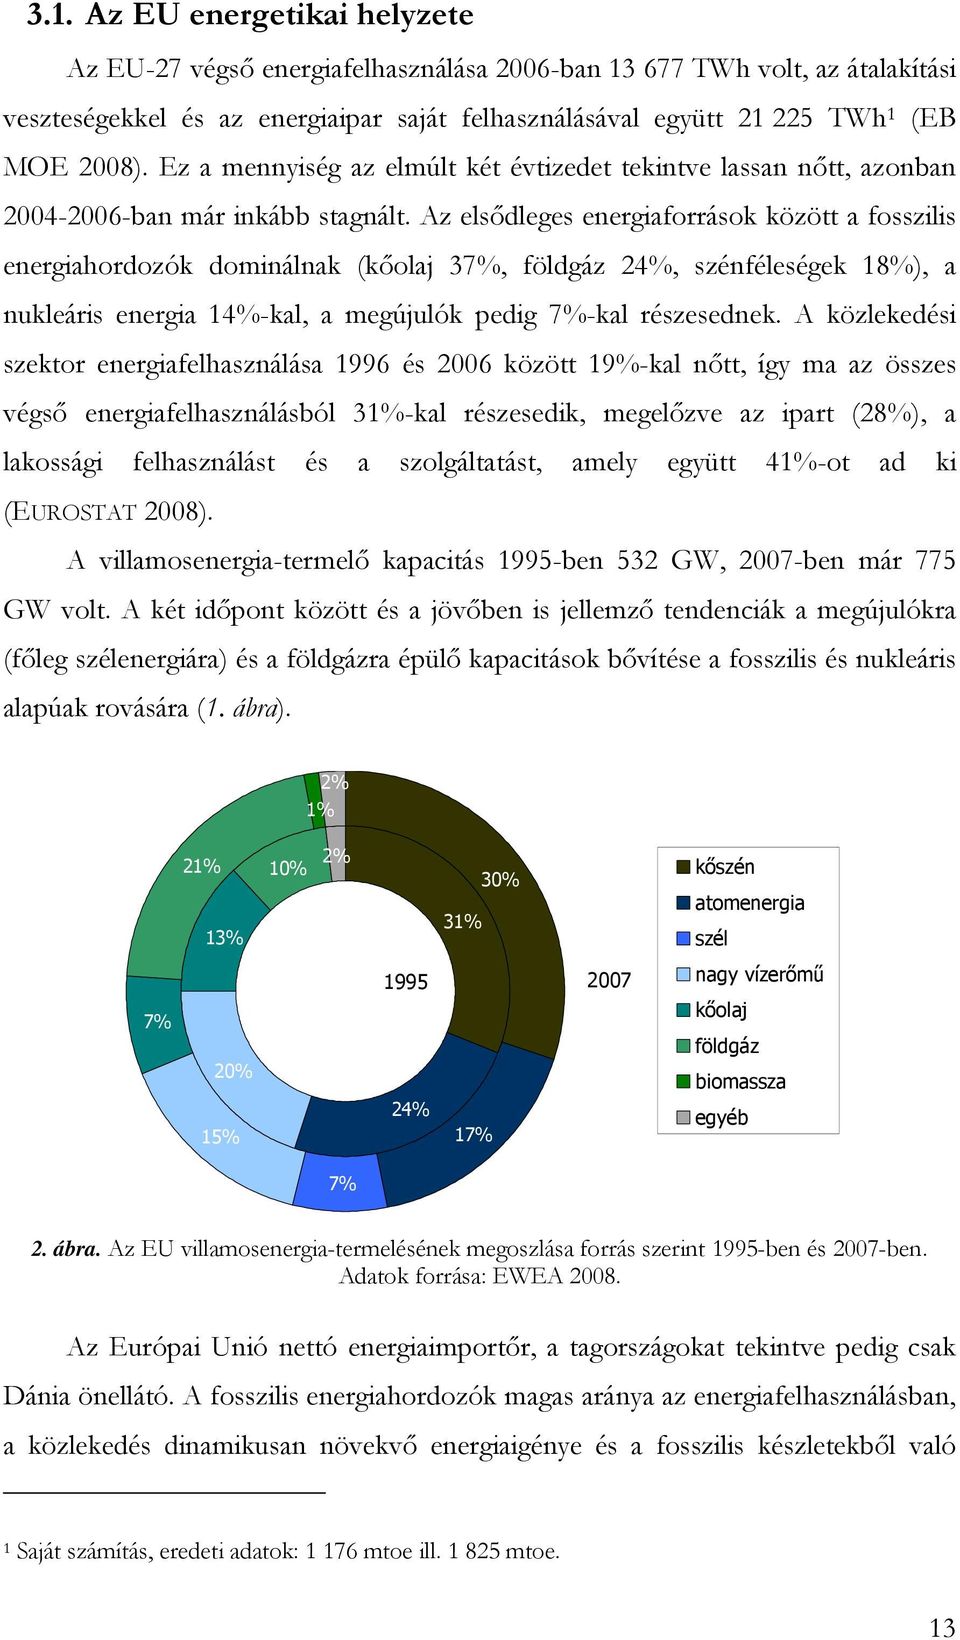 Az elsıdleges energiaforrások között a fosszilis energiahordozók dominálnak (kıolaj 37%, földgáz 24%, szénféleségek 18%), a nukleáris energia 14%-kal, a megújulók pedig 7%-kal részesednek.